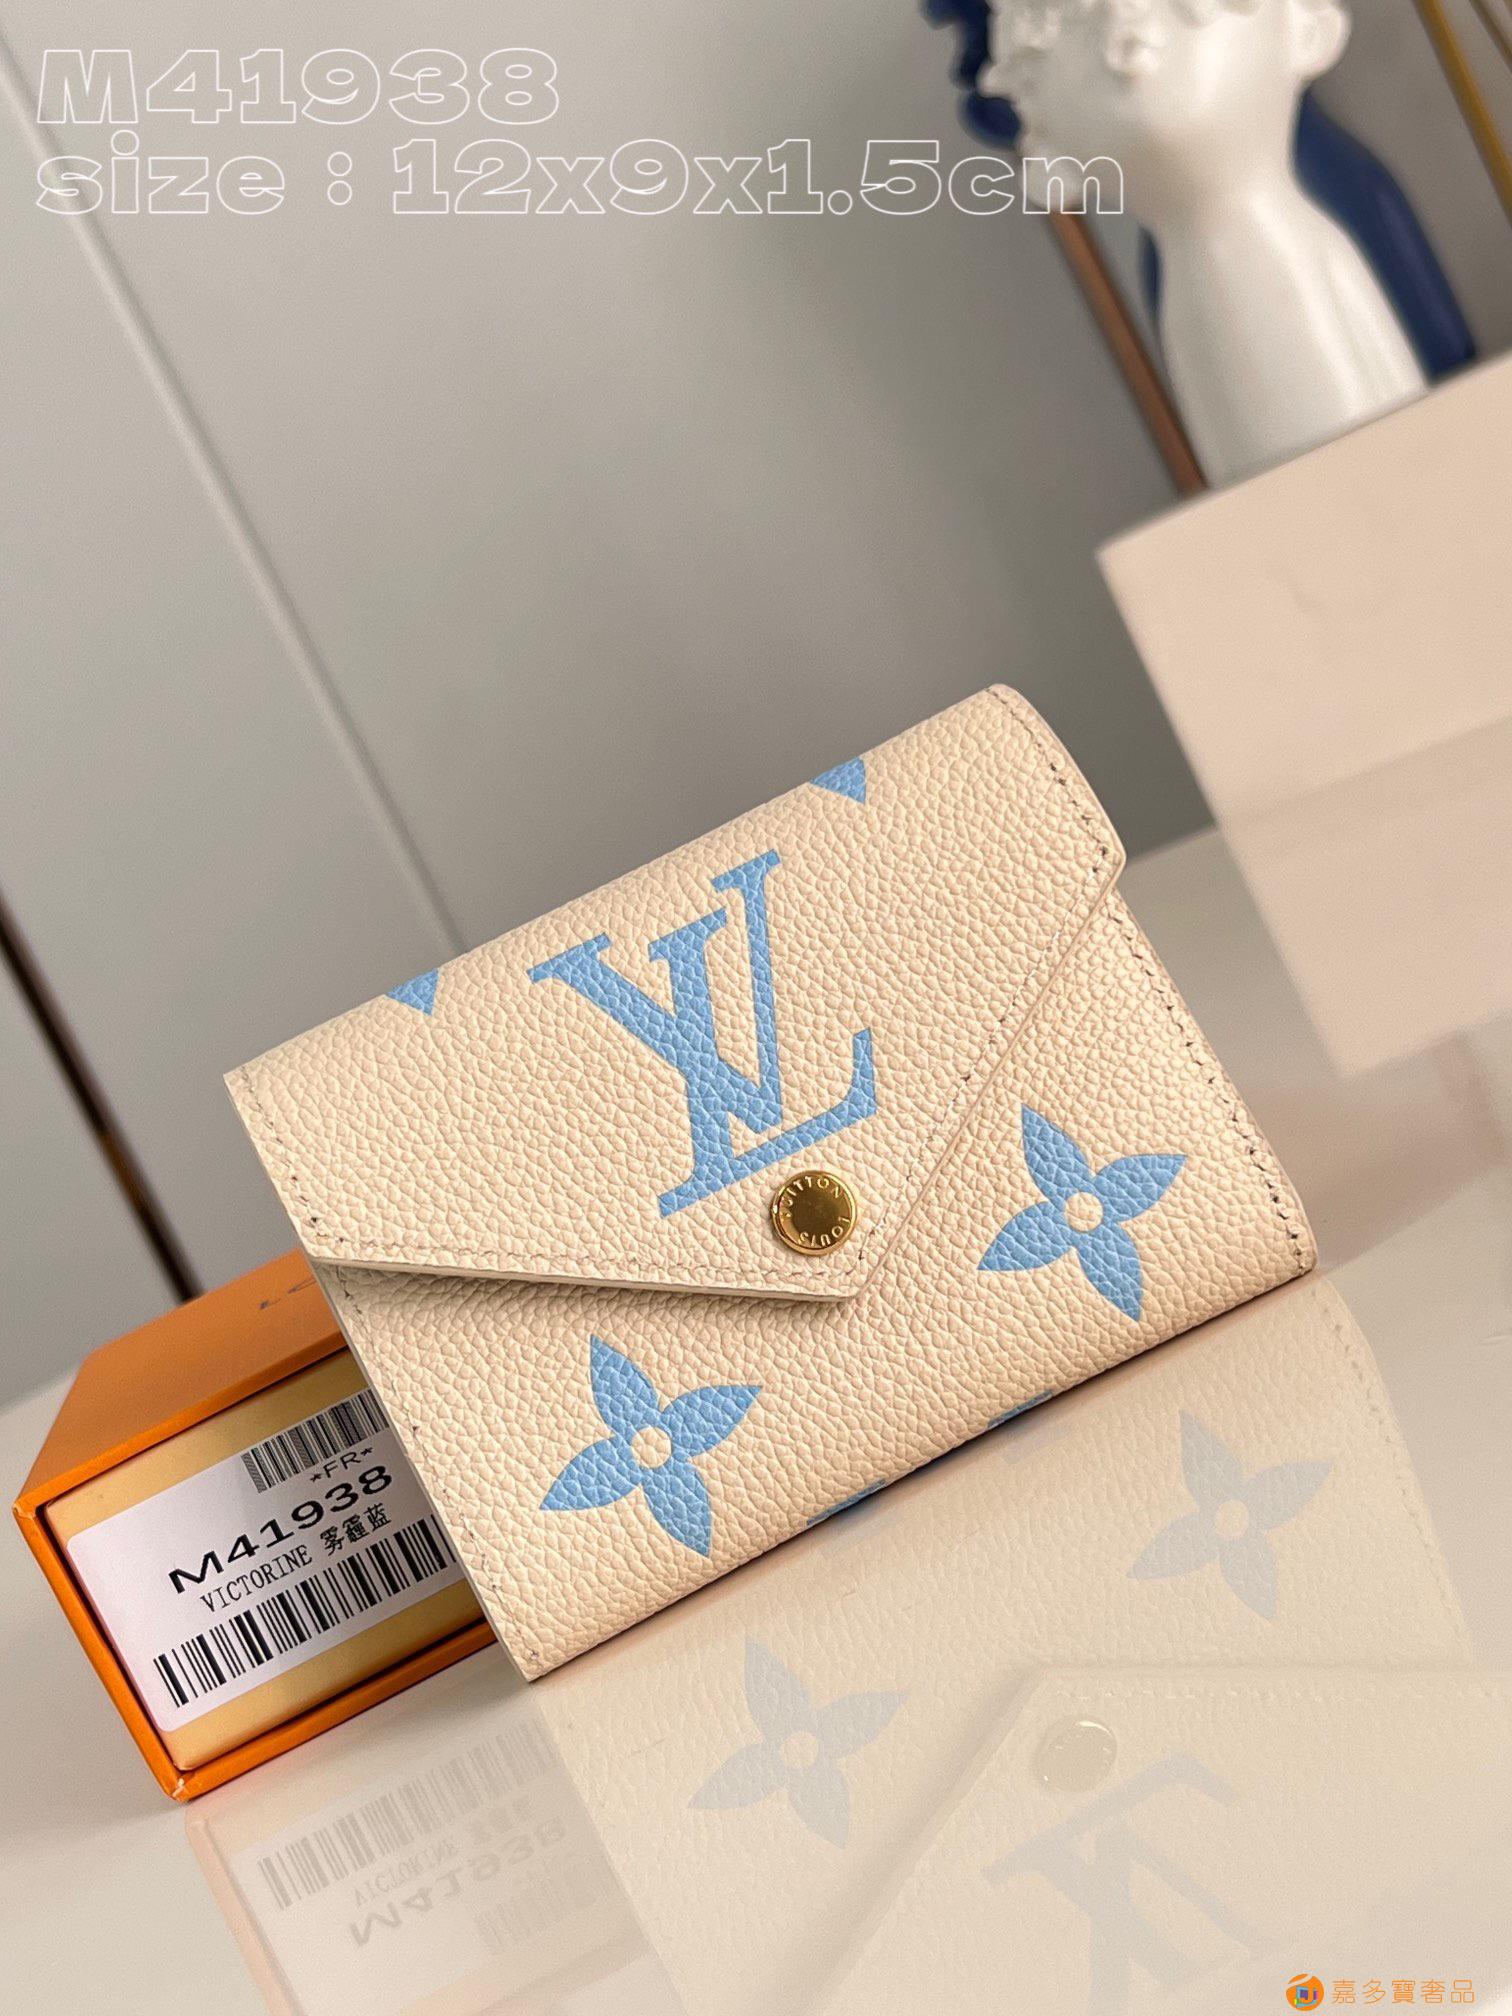 新款Victorine迷你钱夹,信封造型翻盖设计,点缀金色纽